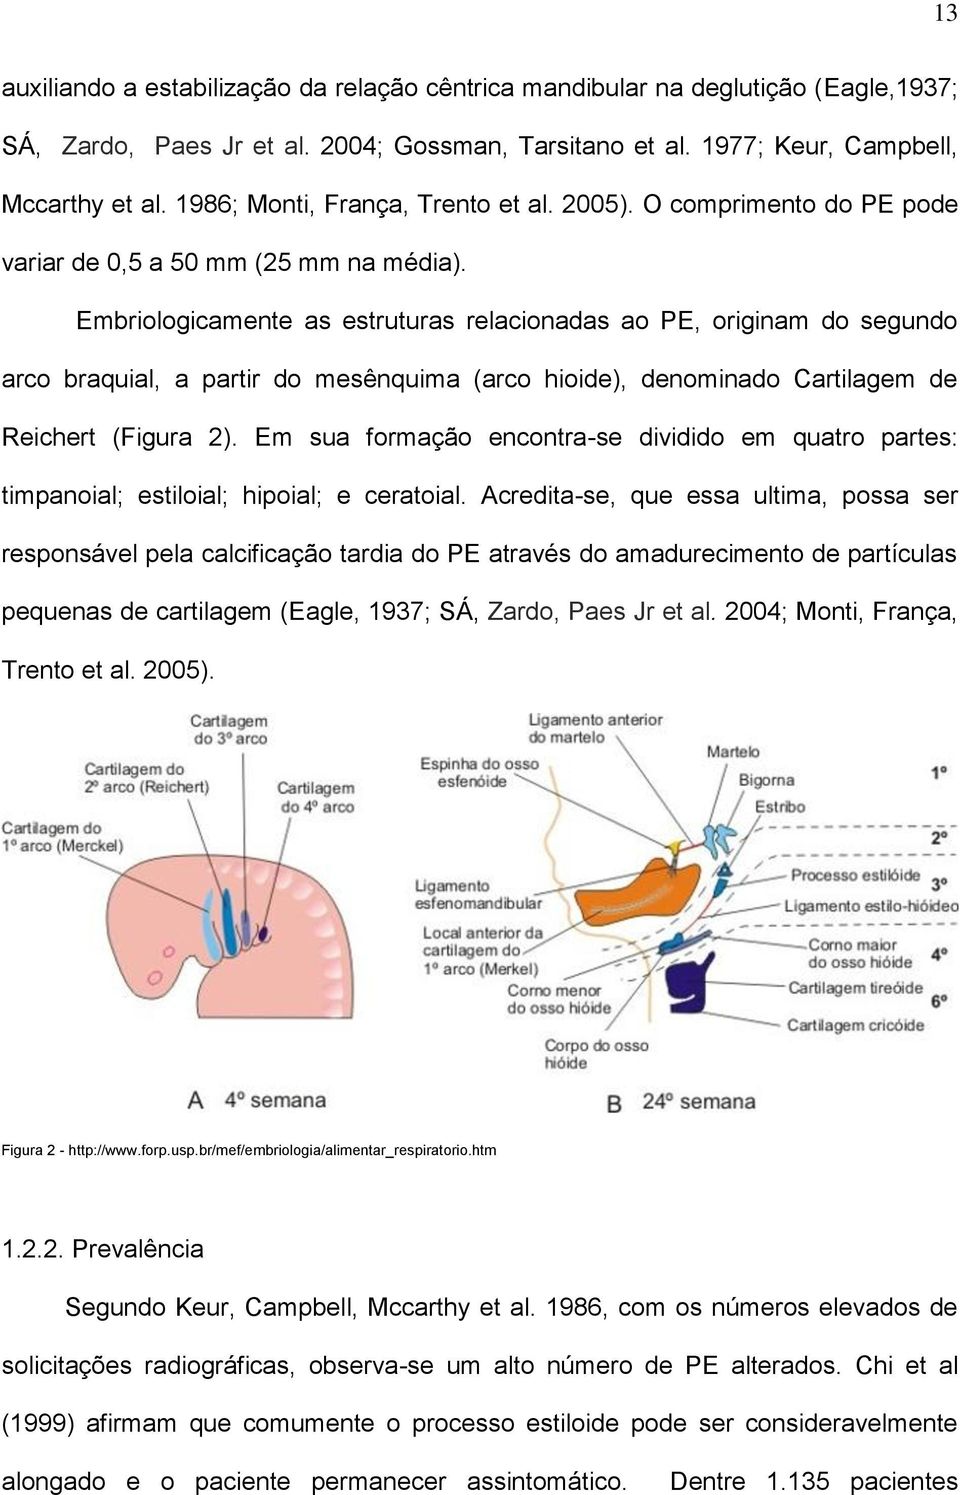 Embriologicamente as estruturas relacionadas ao PE, originam do segundo arco braquial, a partir do mesênquima (arco hioide), denominado Cartilagem de Reichert (Figura 2).